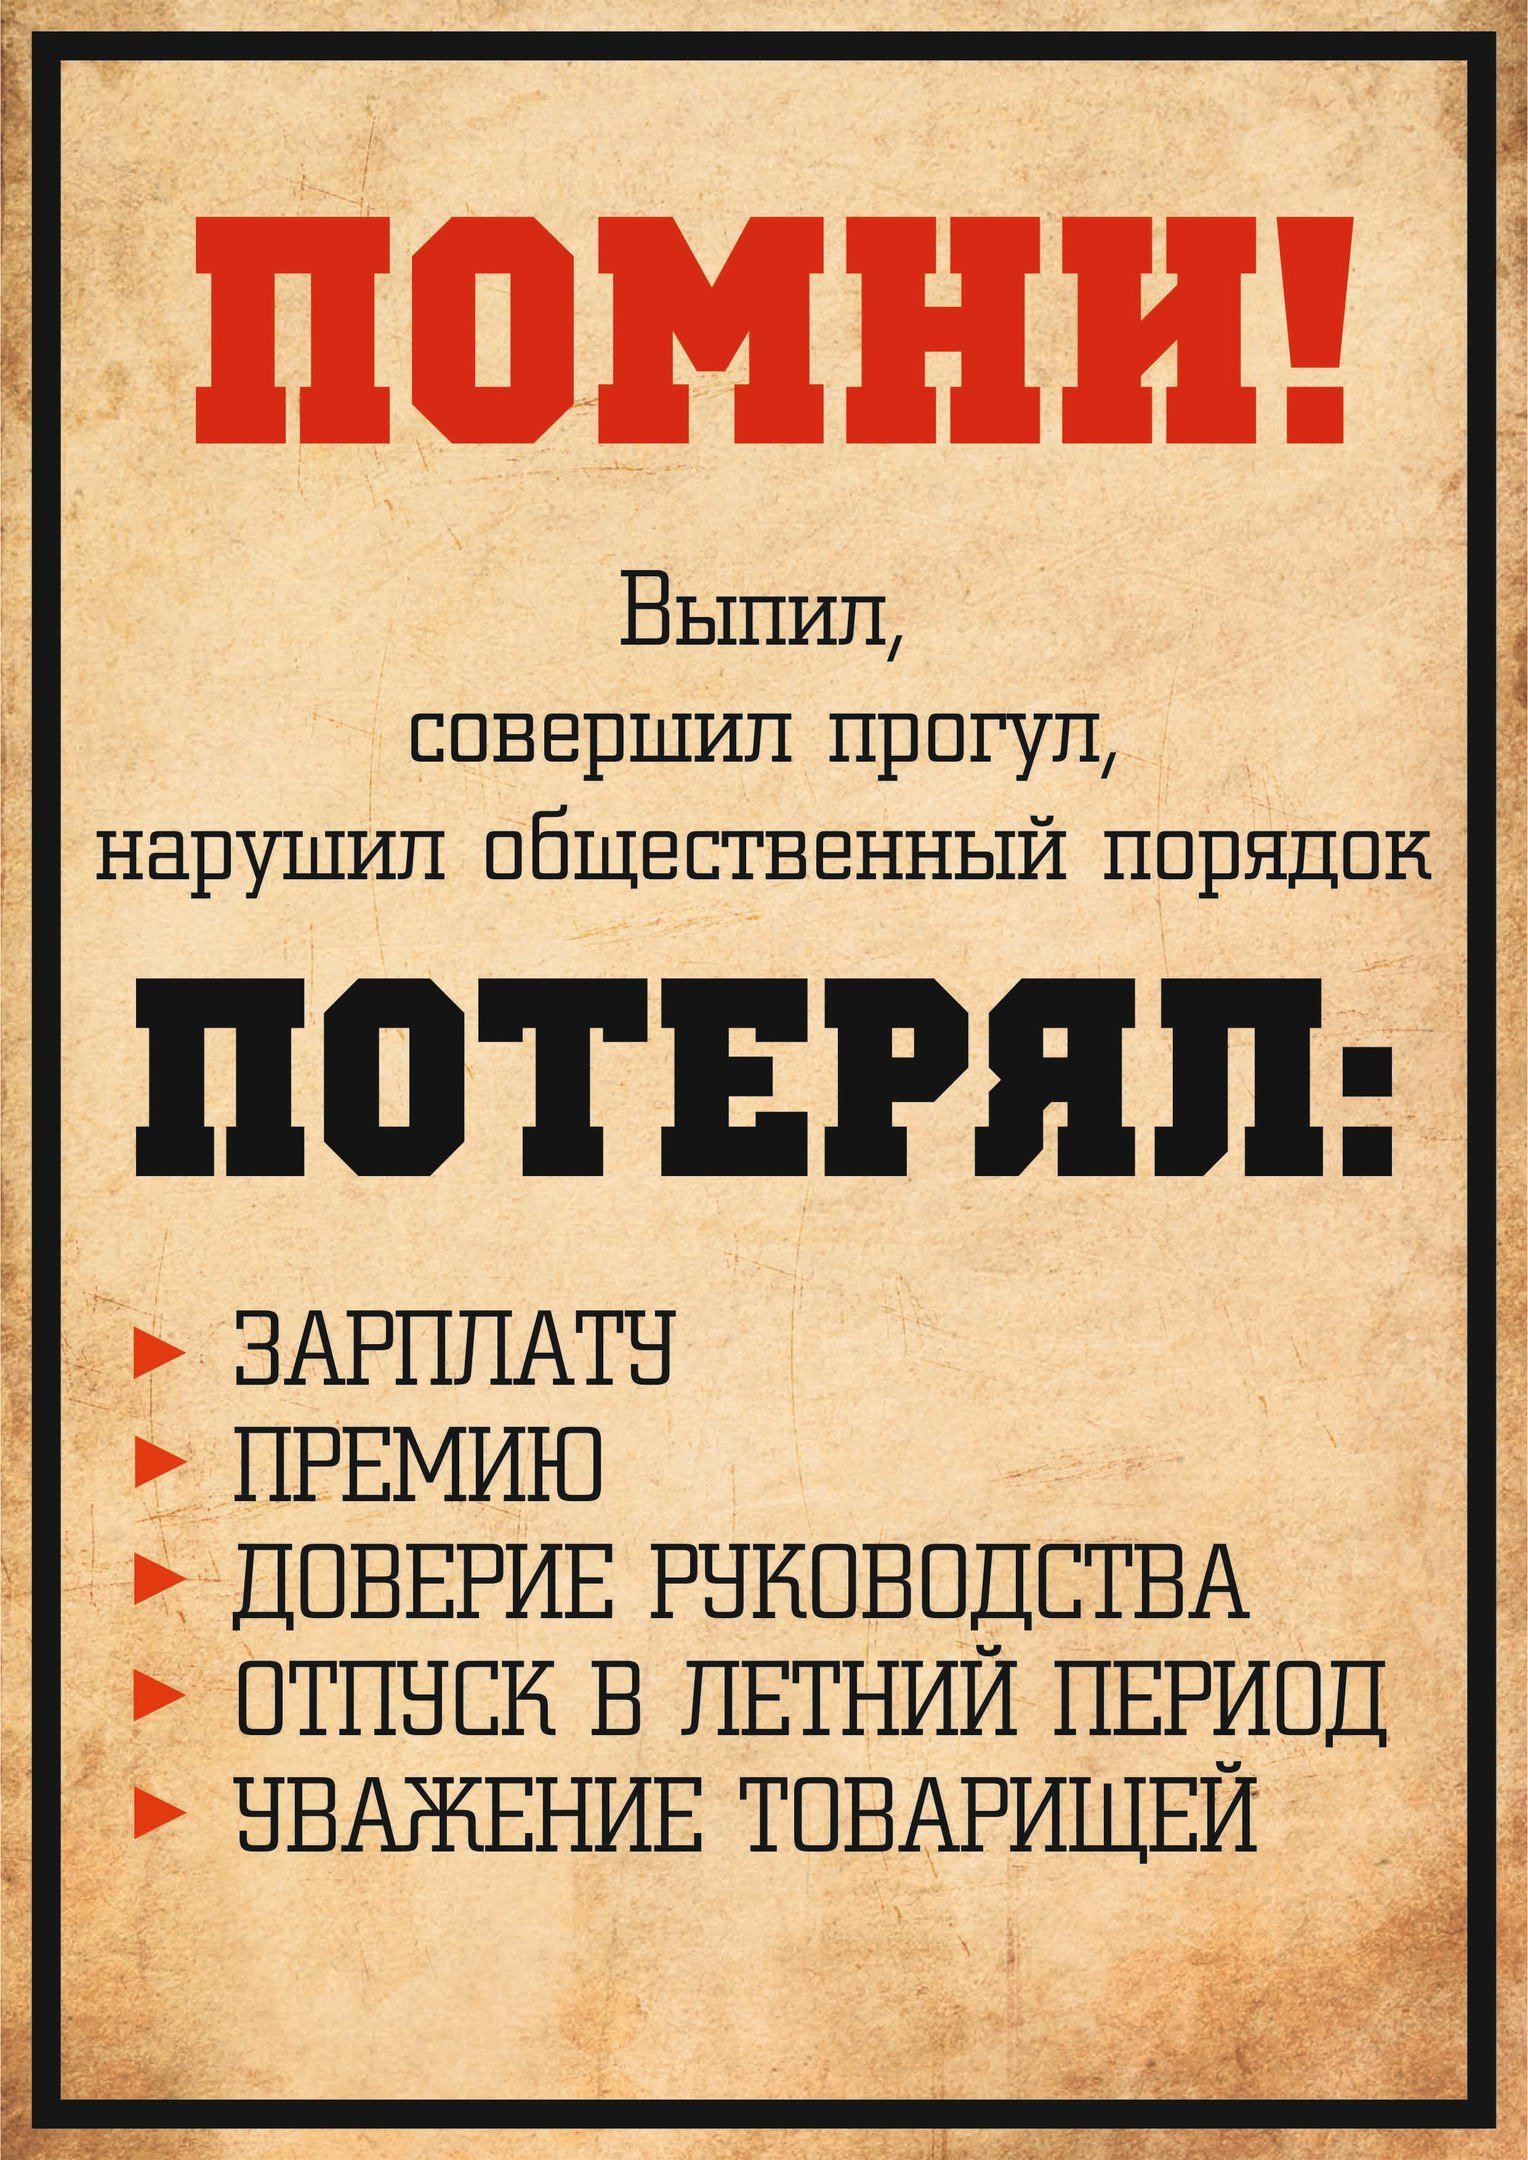 Слоганы для работы. Советские лозунги. Прикольные плакаты про работу. Смешные советские плакаты. Советский плакат Помни.